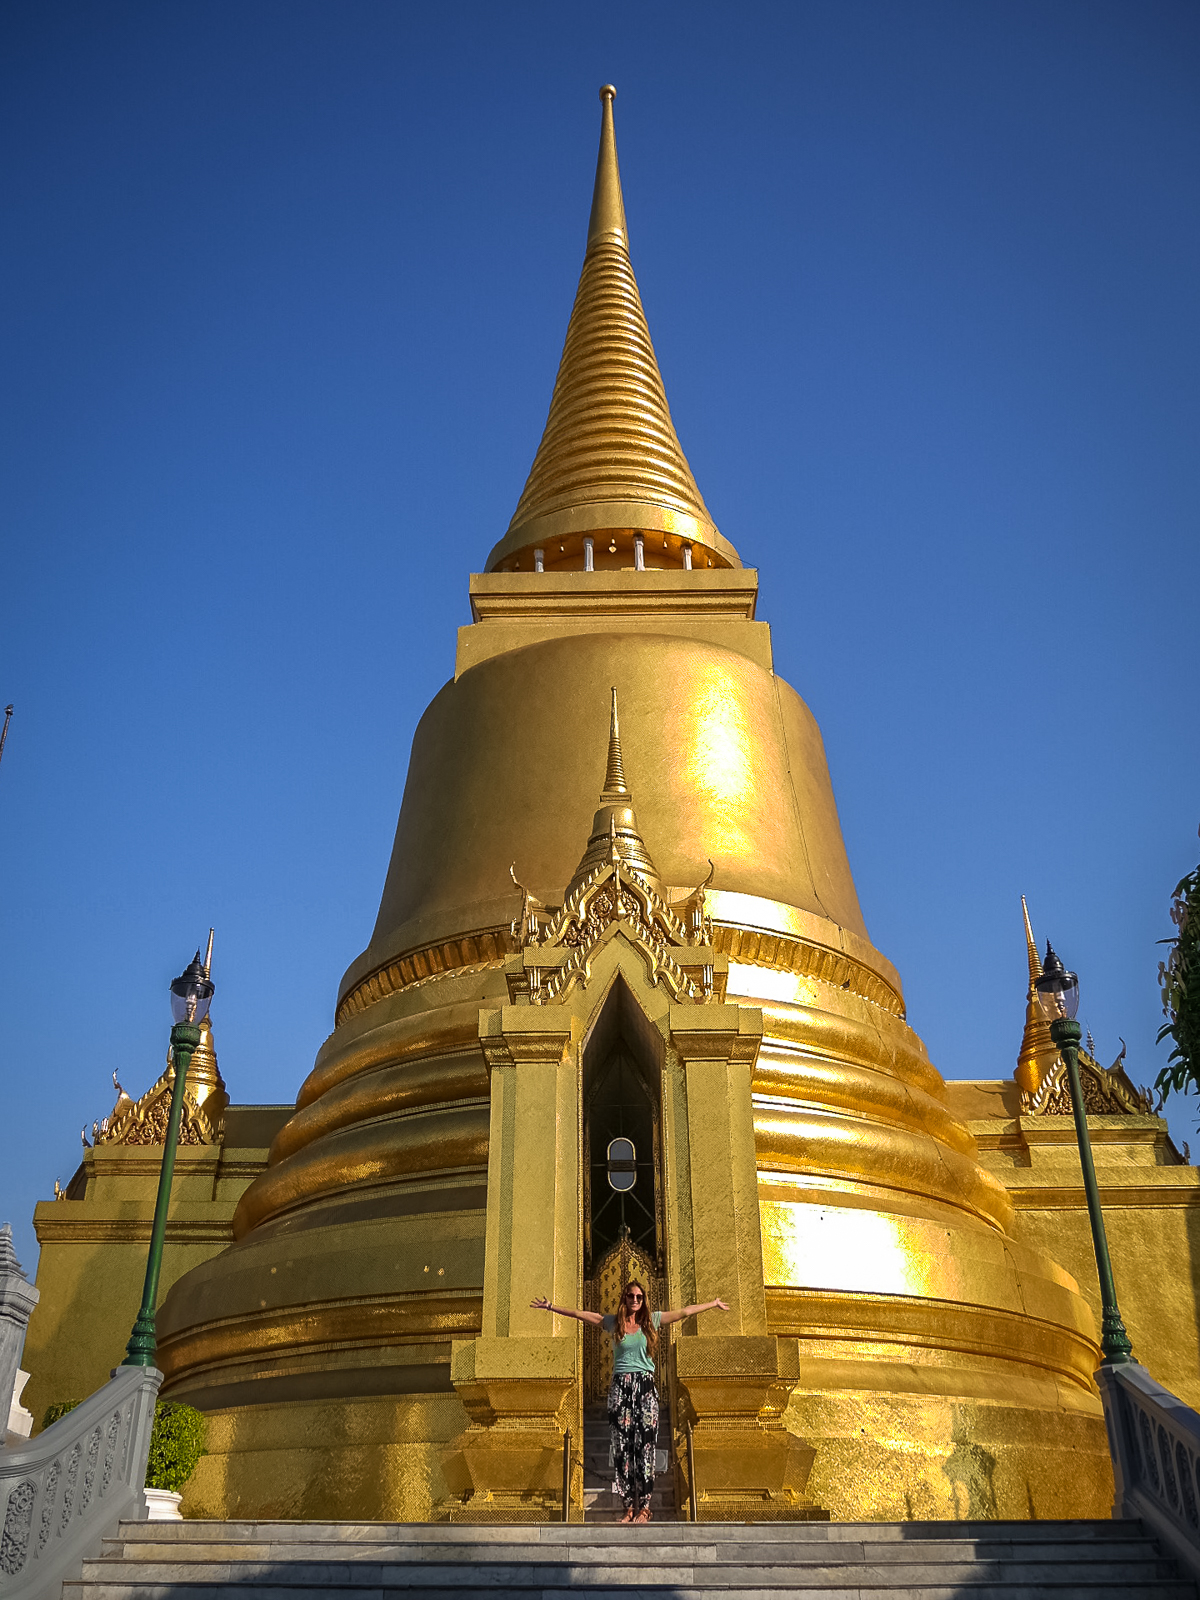 Phra Sri Ratana Chedi at the Grand Palace in Bangkok